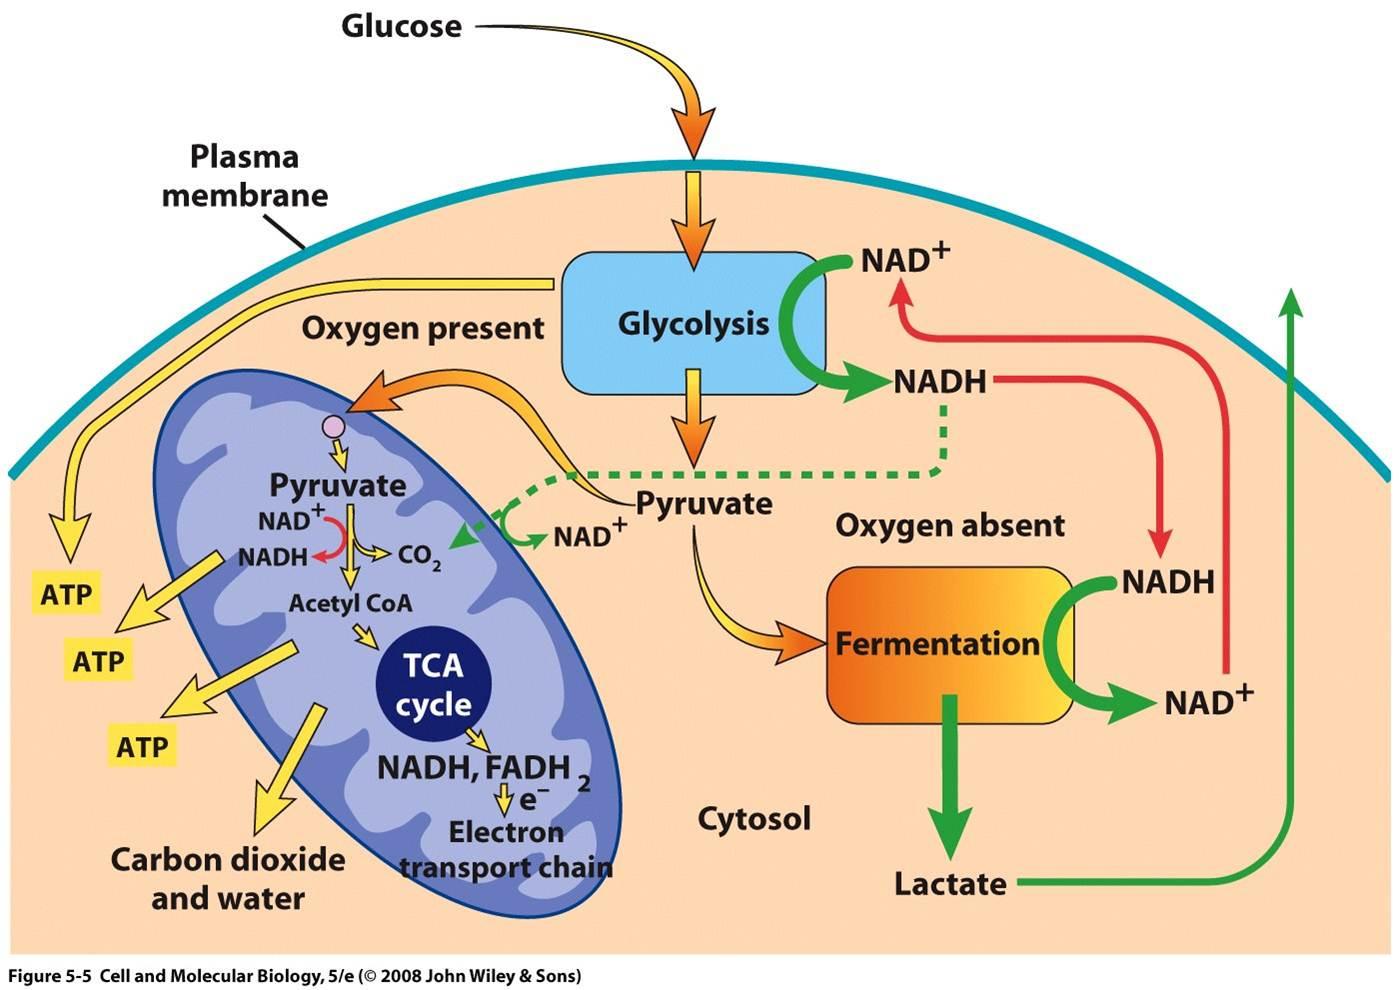 Митохондрия аэробный. Схема клеточного дыхания цикл Кребса. Цикл Кребса схема в митохондриях. Цикл Кребса происходит в митохондриях. Аэробный процесс в митохондриях.